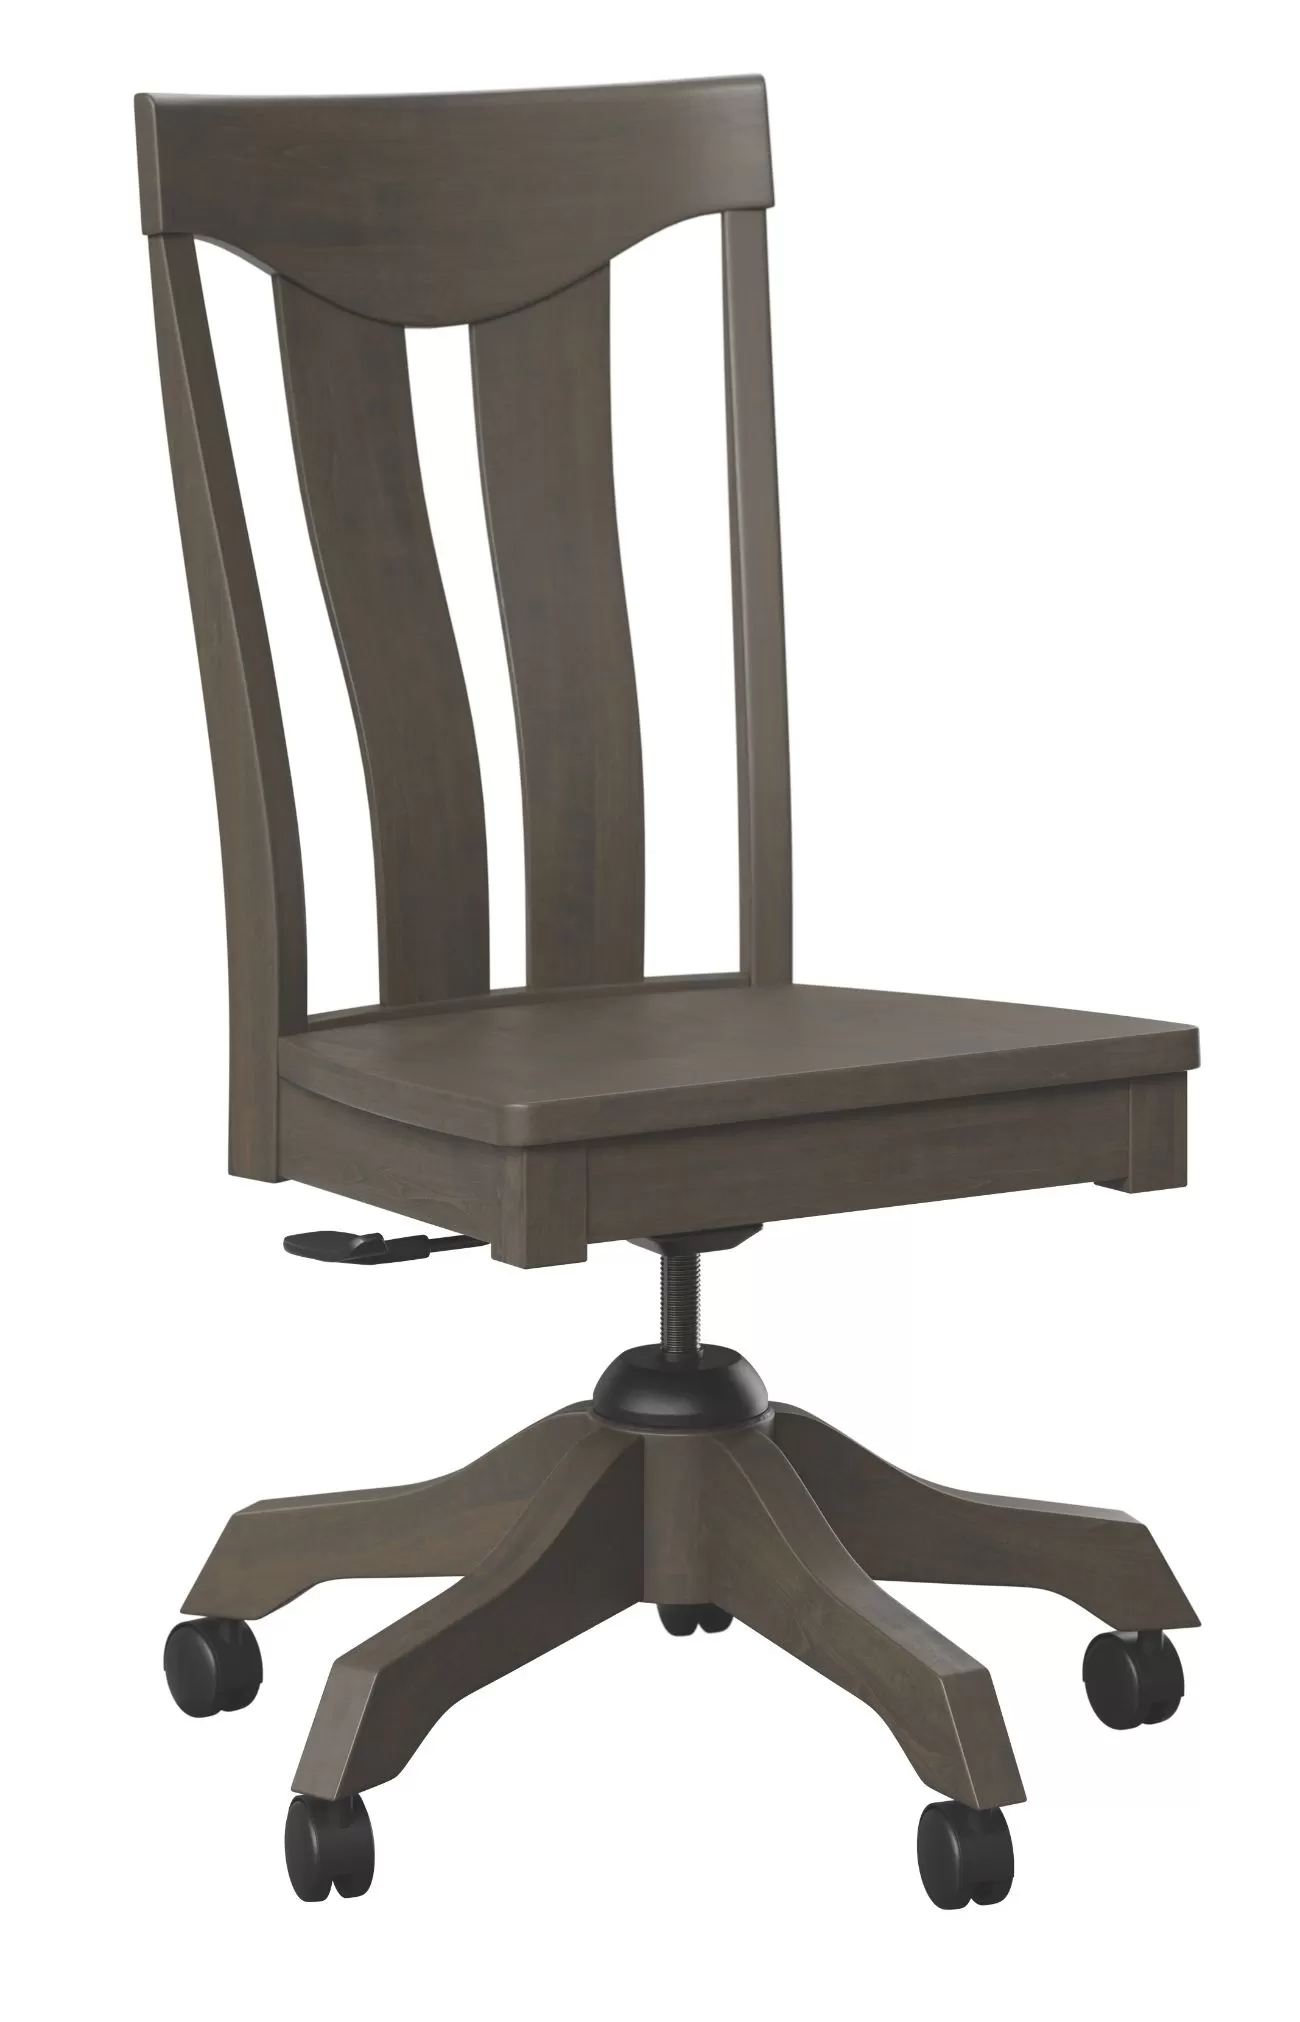 Belmont side desk chair